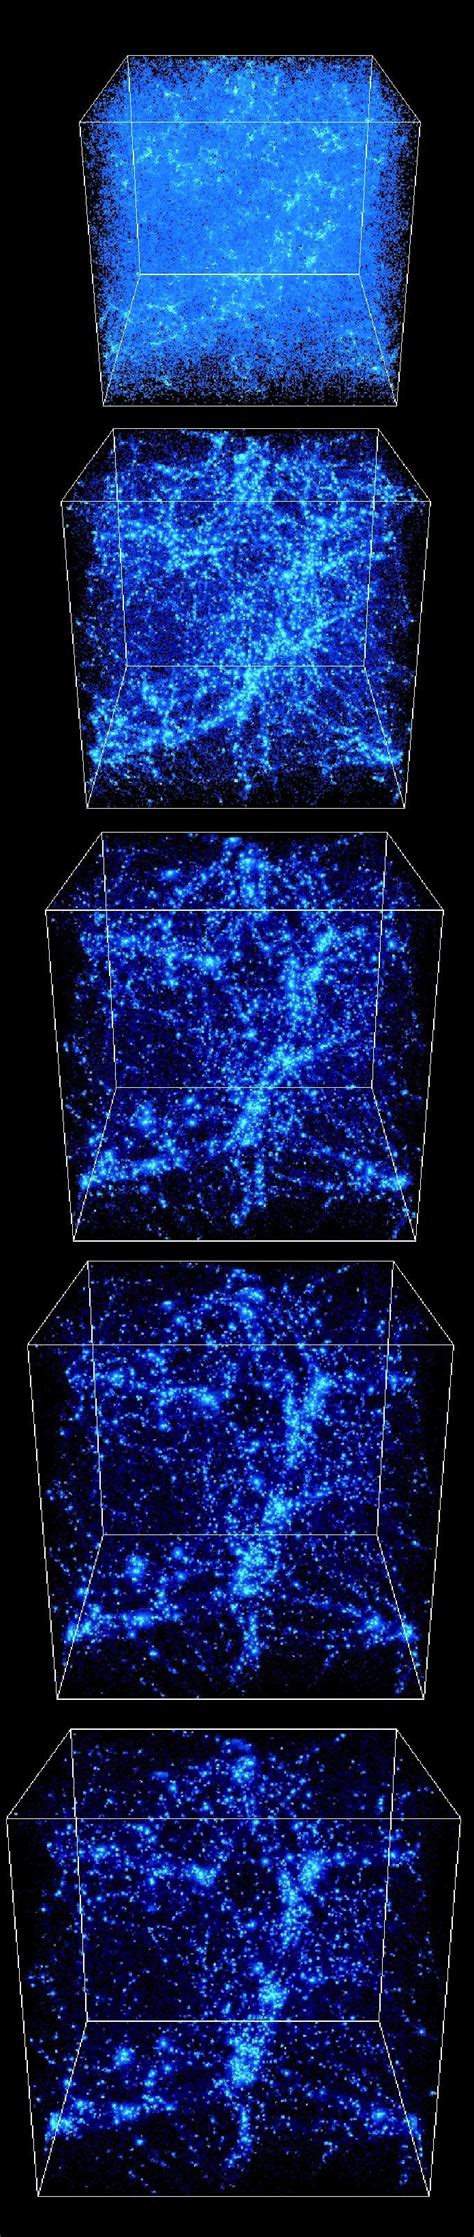 dark matter rules mini galaxies scienceblogs